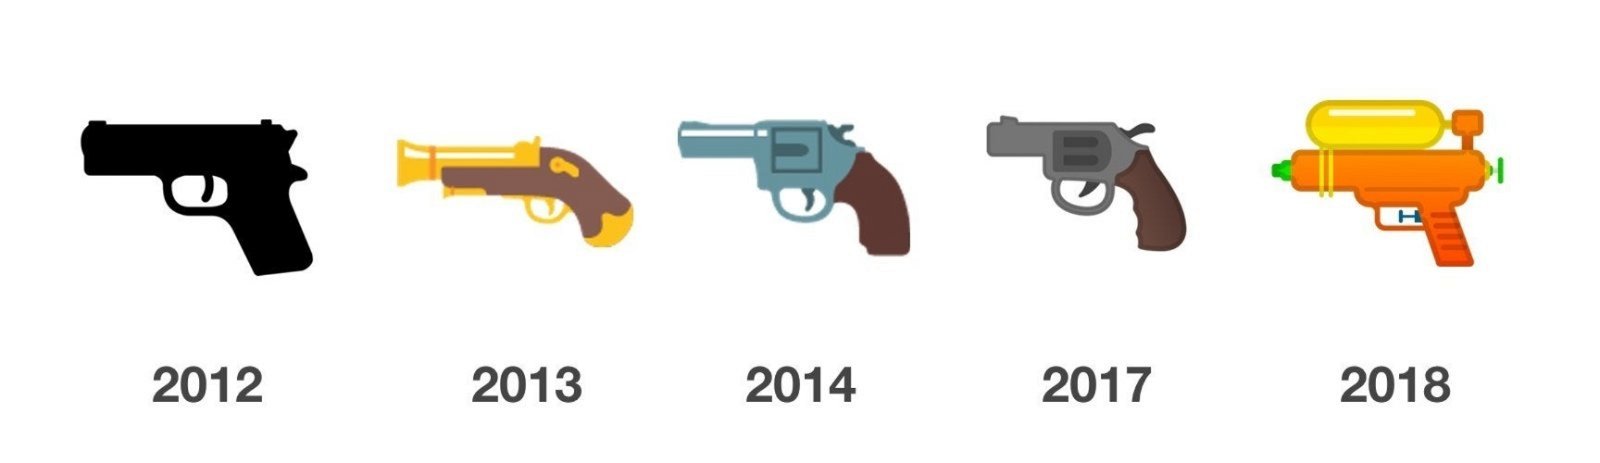 emoji pistola evolución